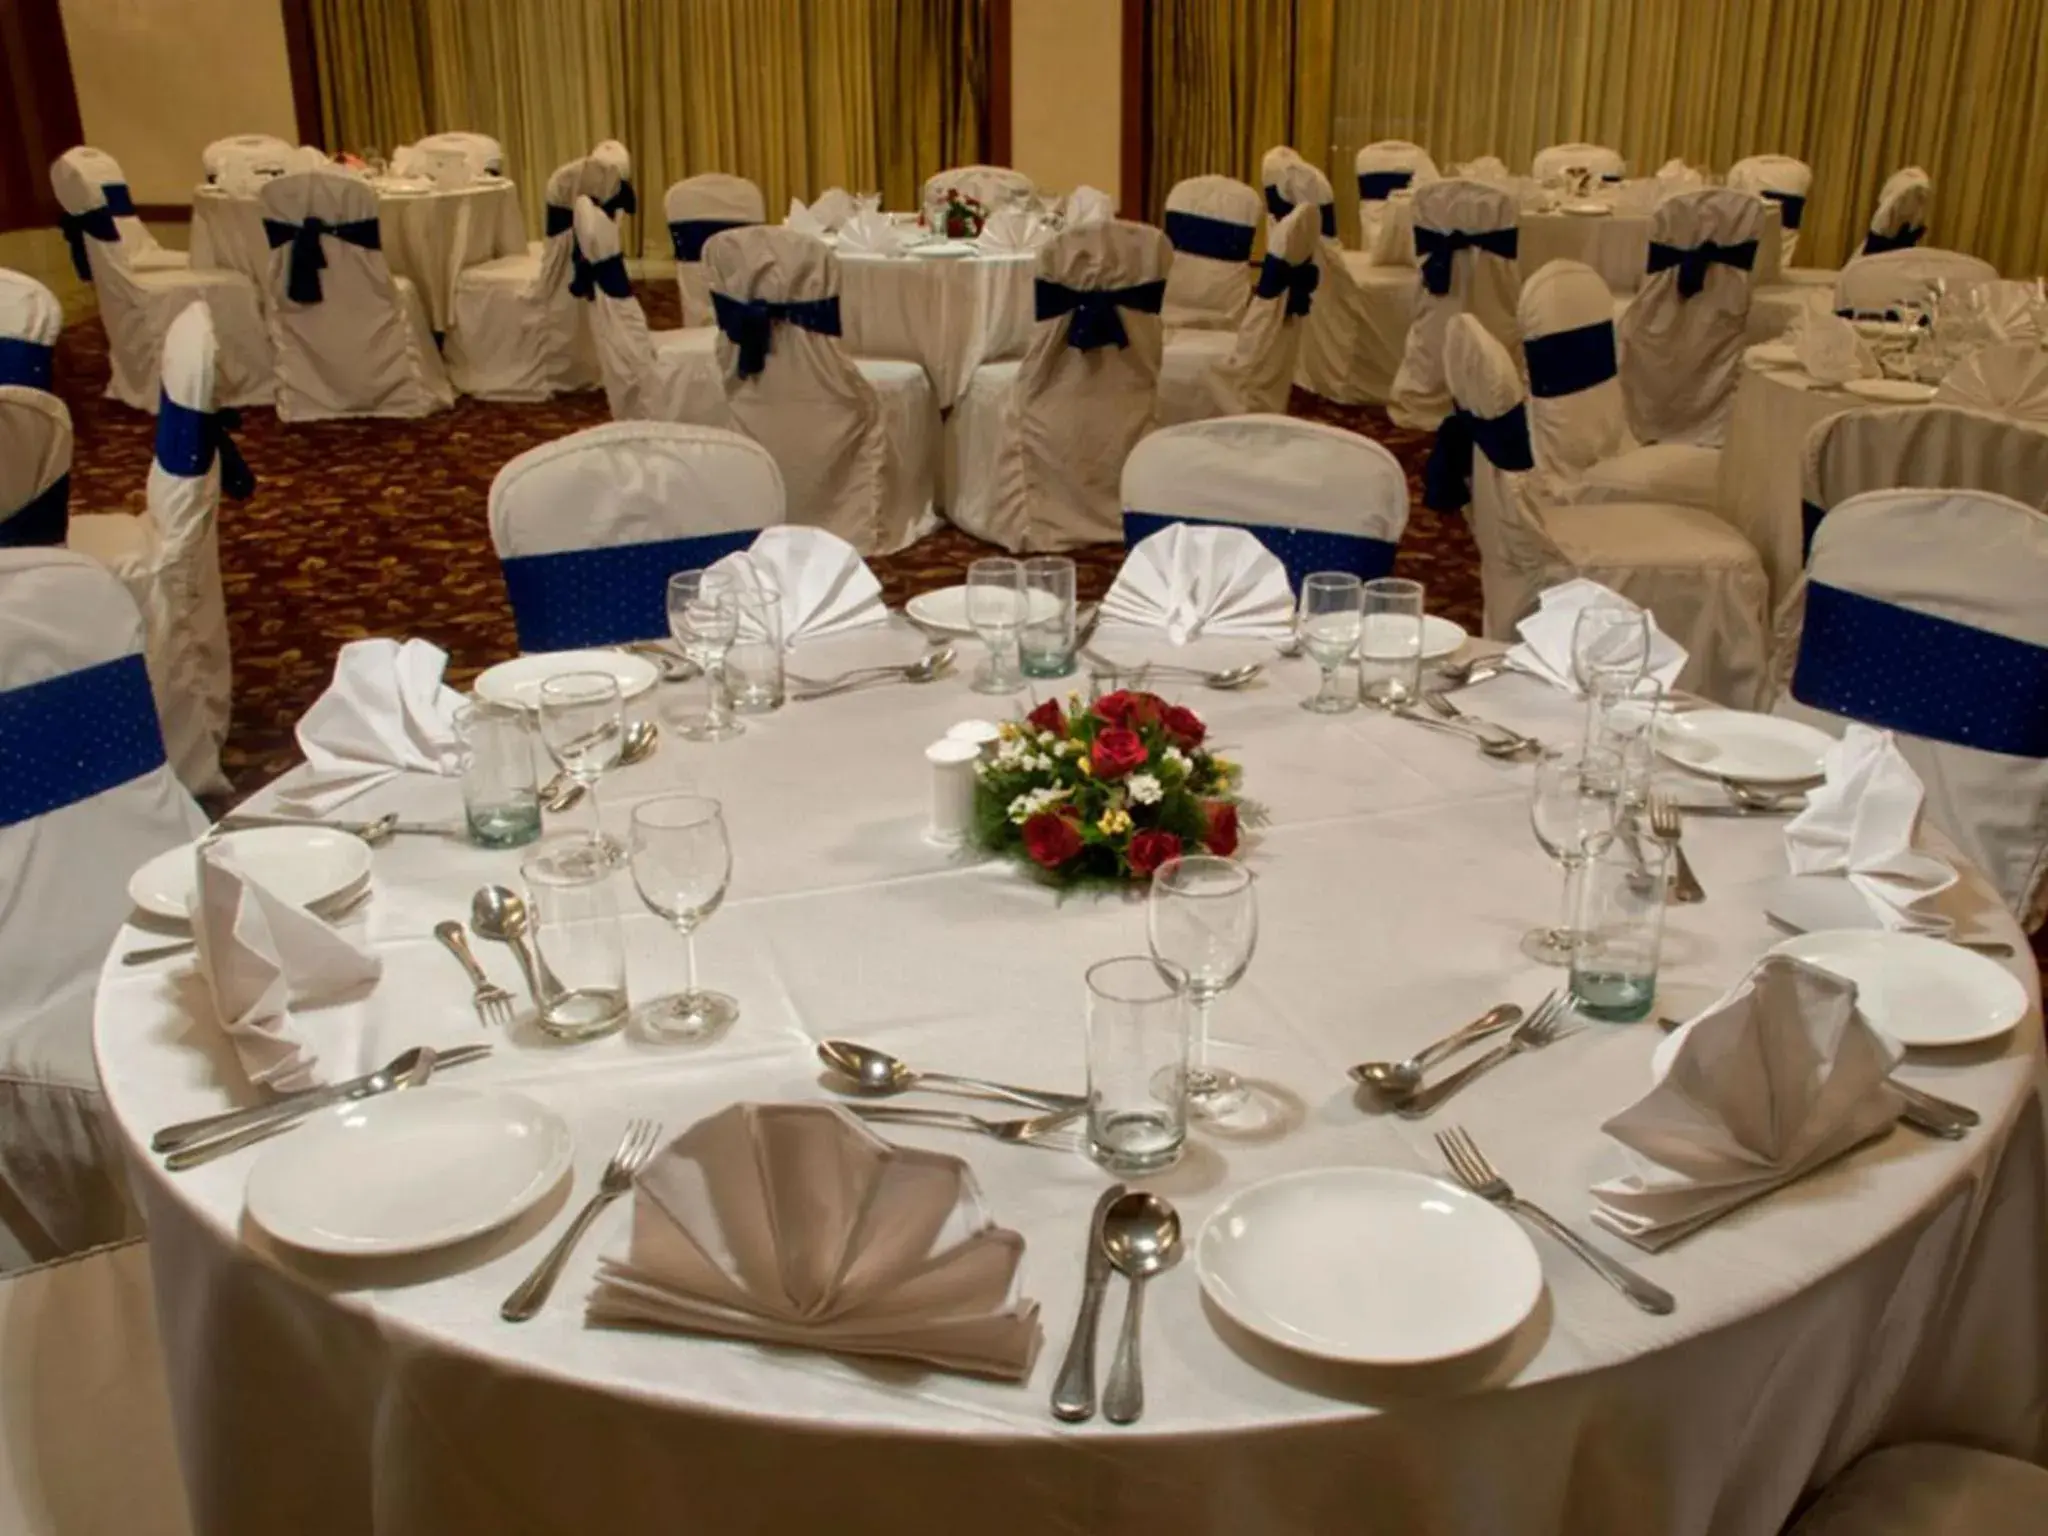 Banquet/Function facilities, Banquet Facilities in Clarion Hotel Bella Casa